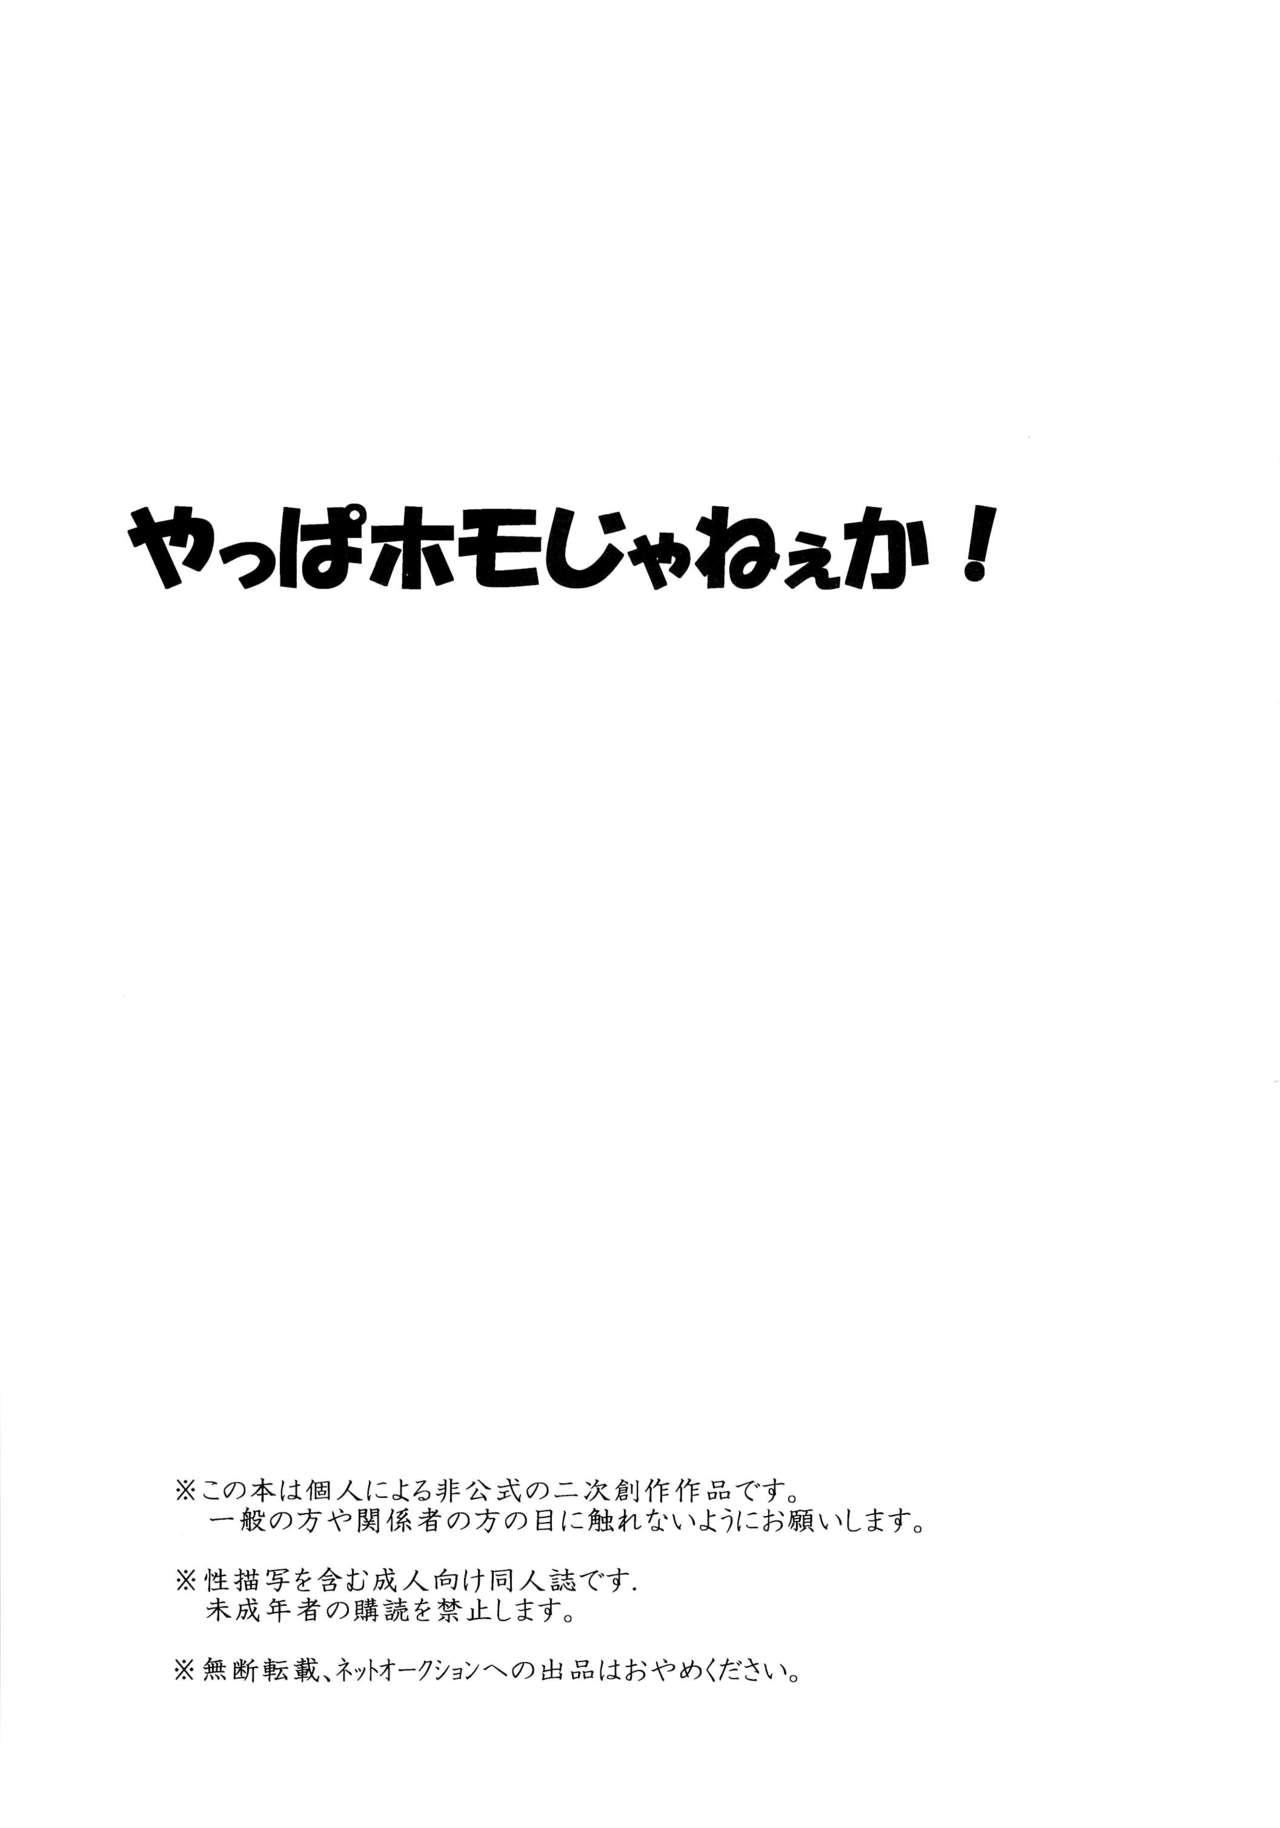 Webcams Yappa Homo Janee ka! - Shingeki no kyojin Flashing - Picture 3